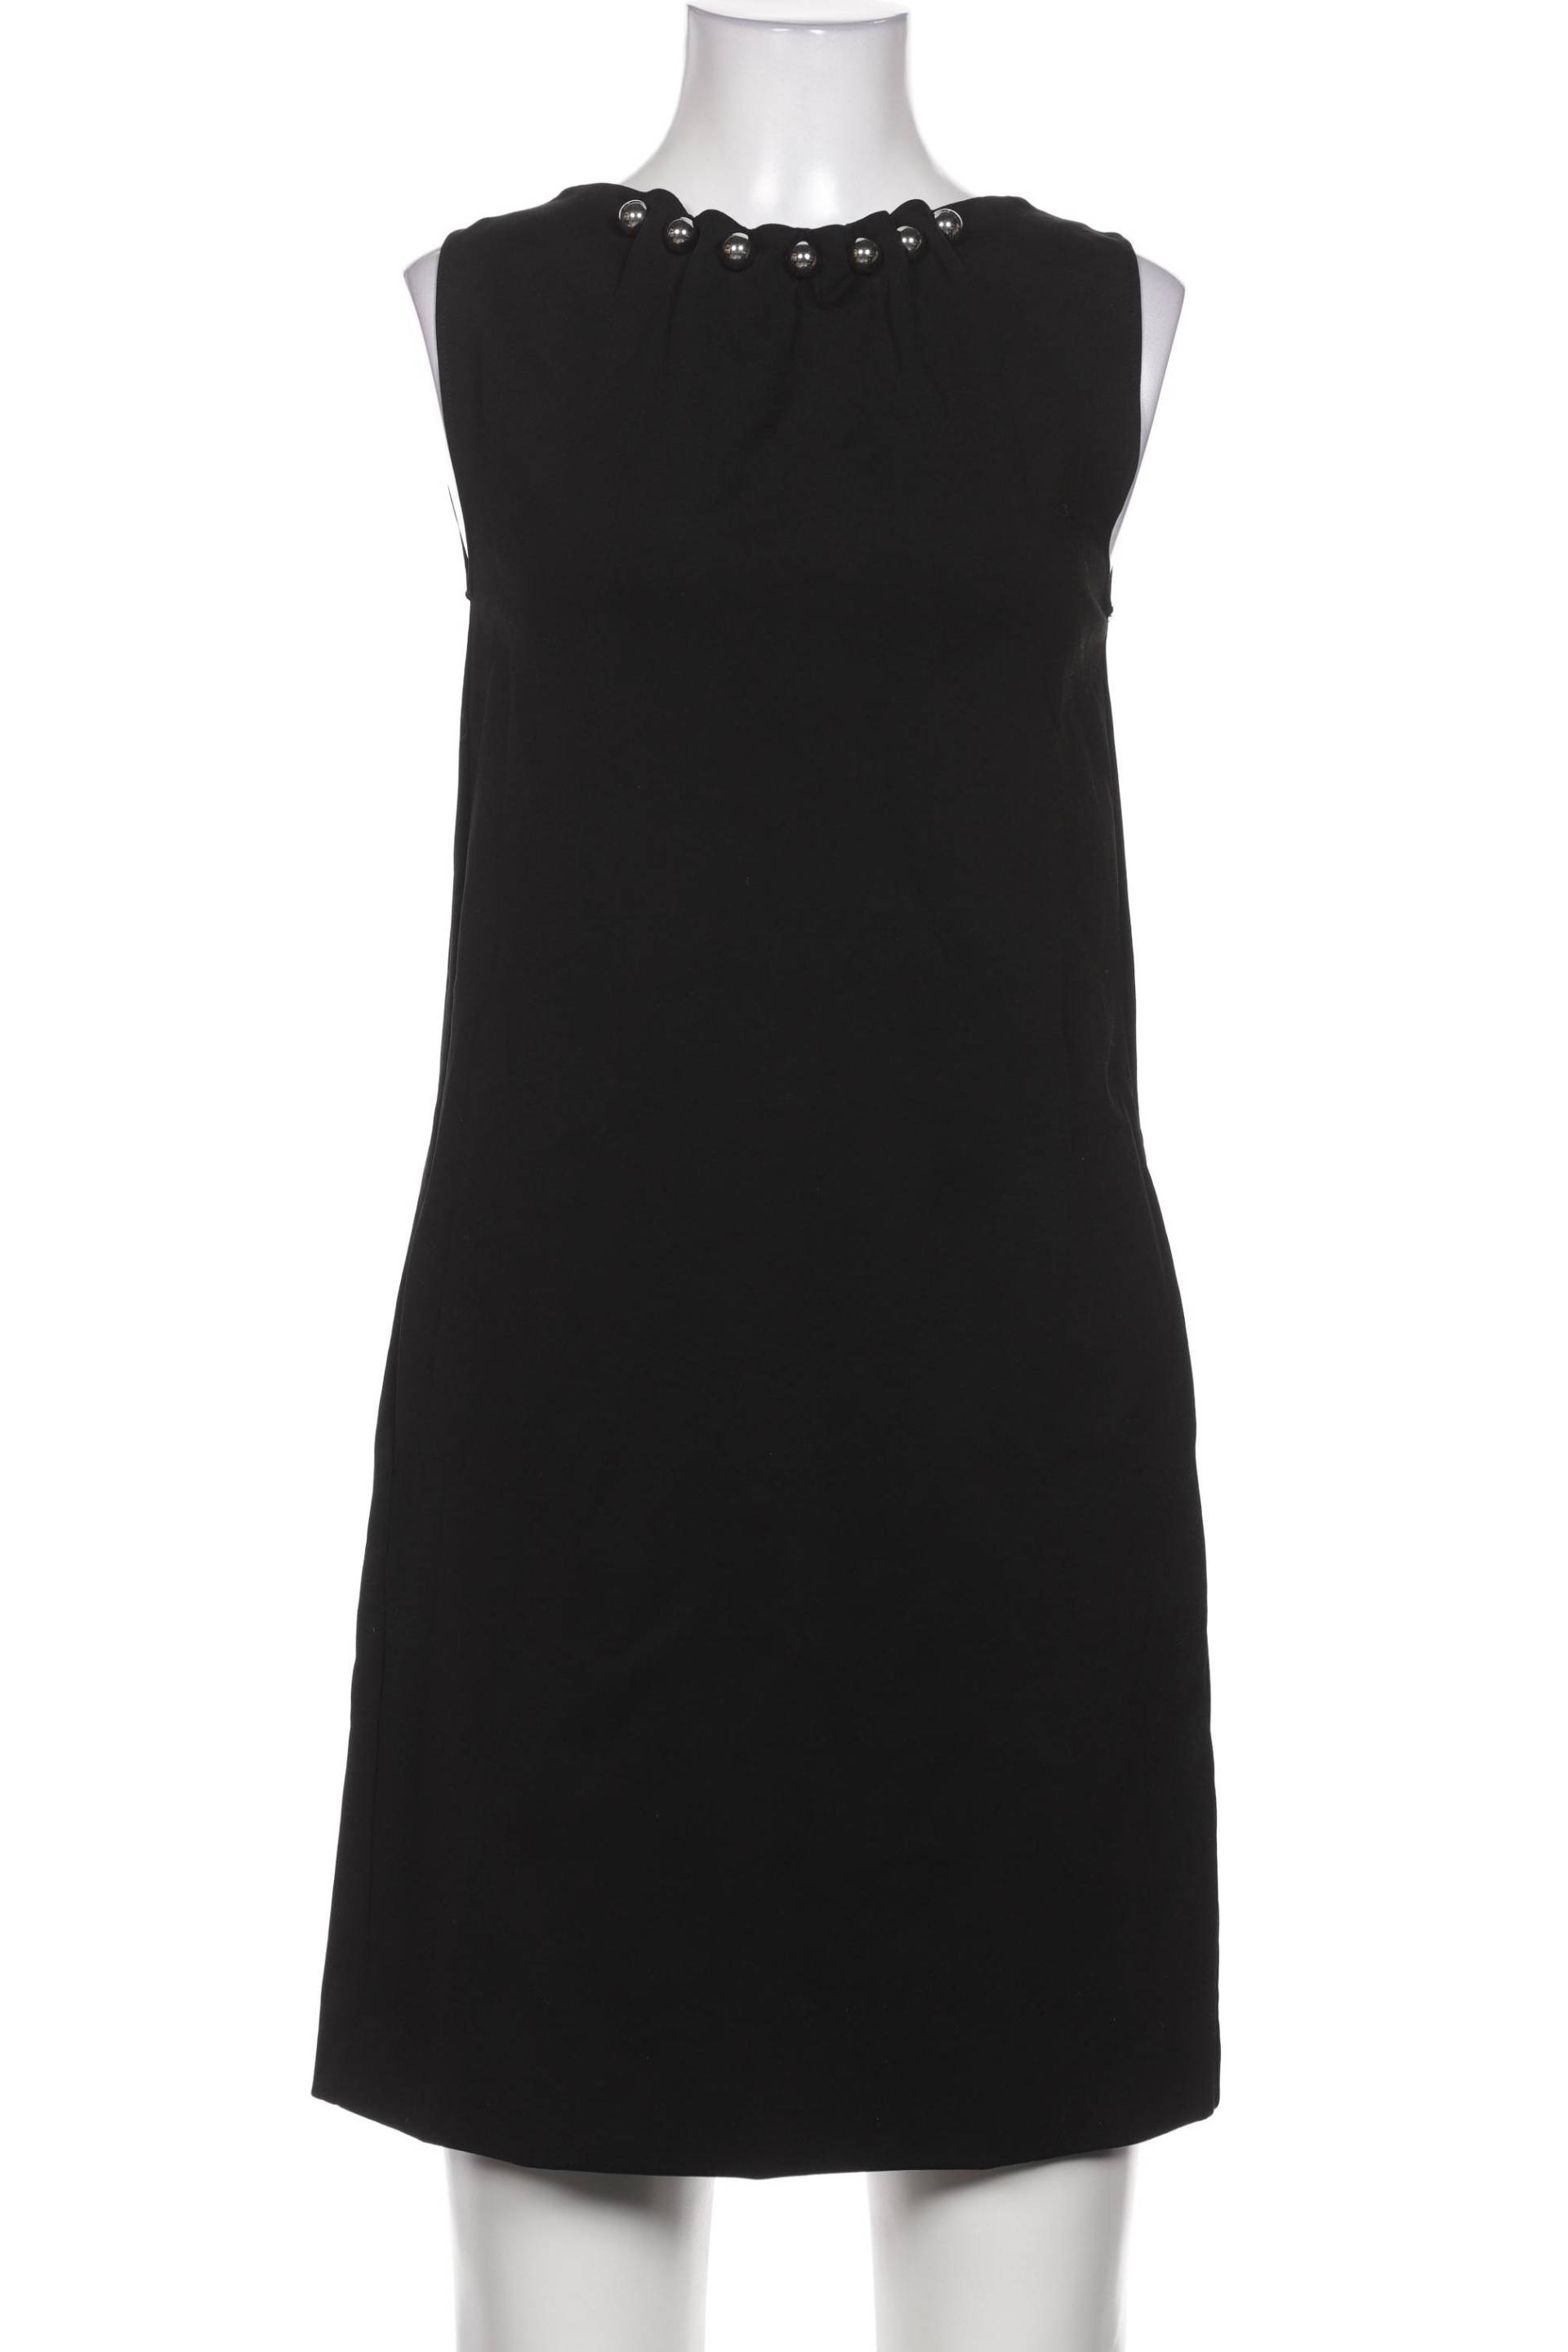 Moschino Damen Kleid, schwarz, Gr. 36 von Moschino